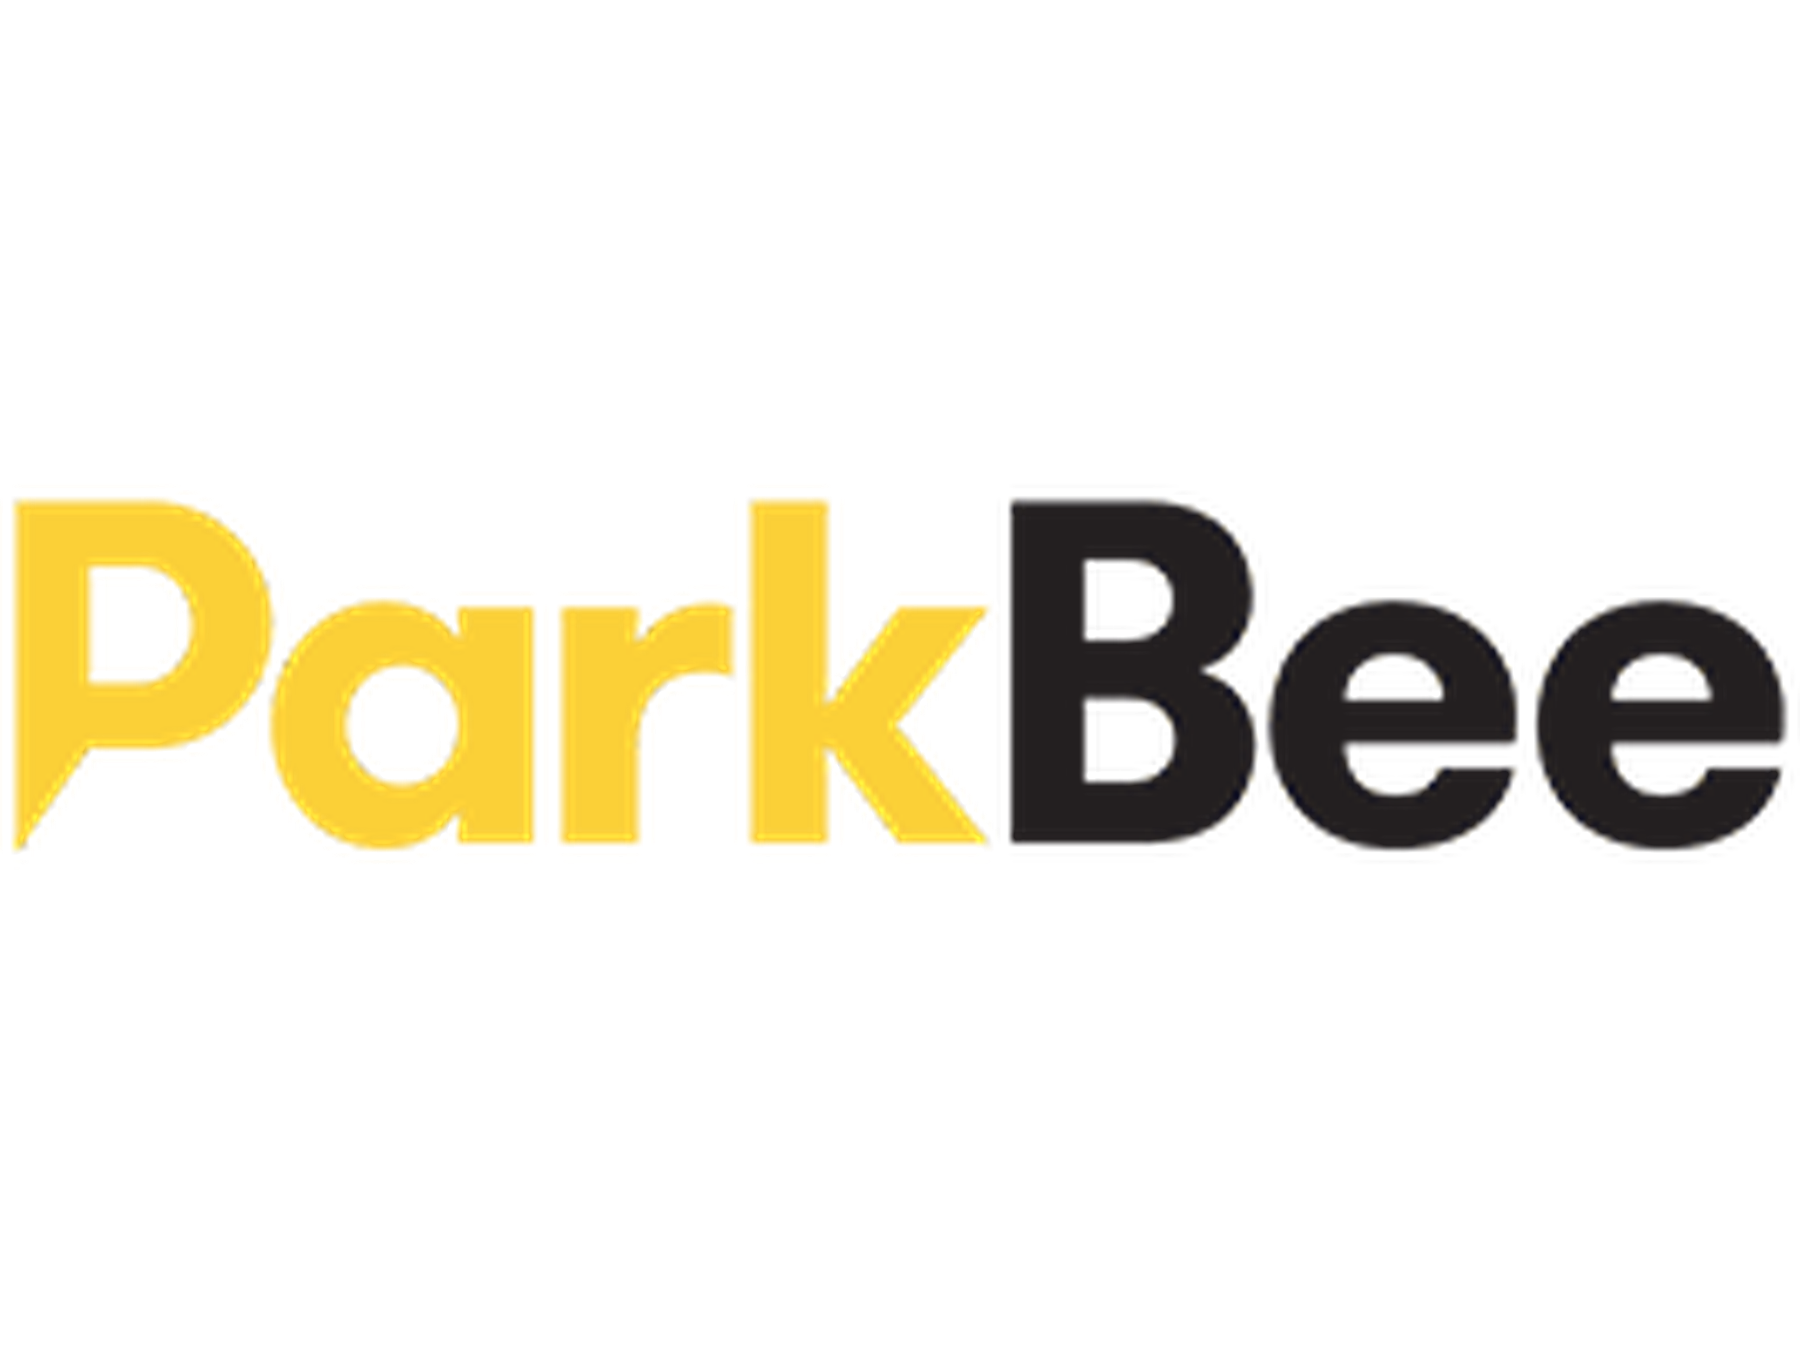 ParkBee kortingscode